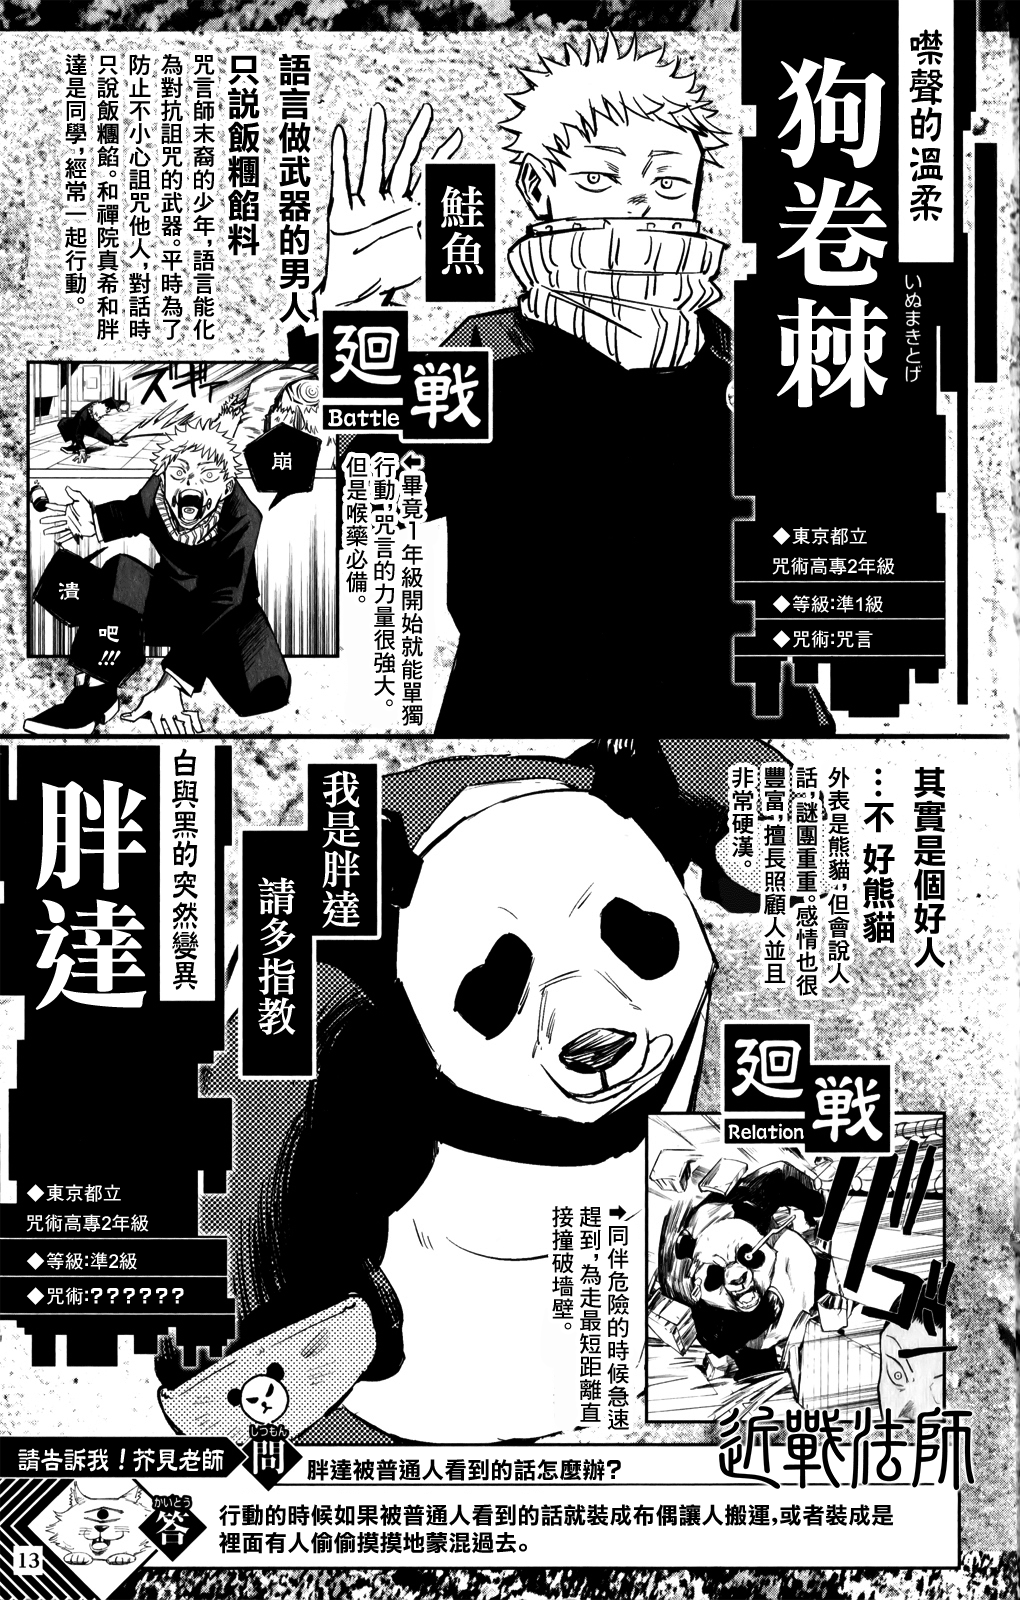 【漫画】咒术回战 #最速角色书